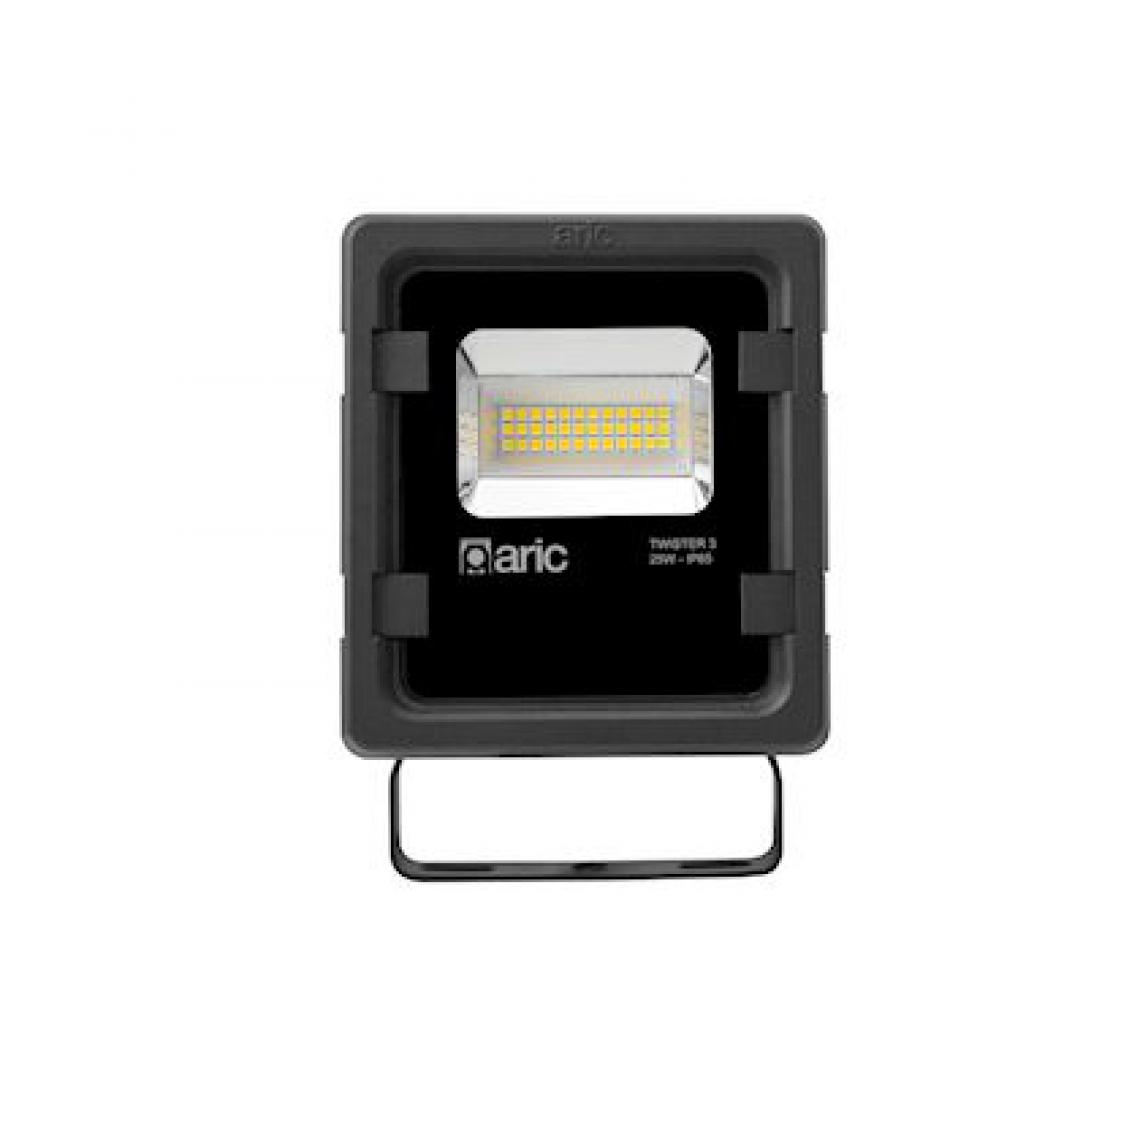 Aric - projecteur à led - aric twister 3 - 25w - 3000k - noir - aric 50823 - Projecteurs LED